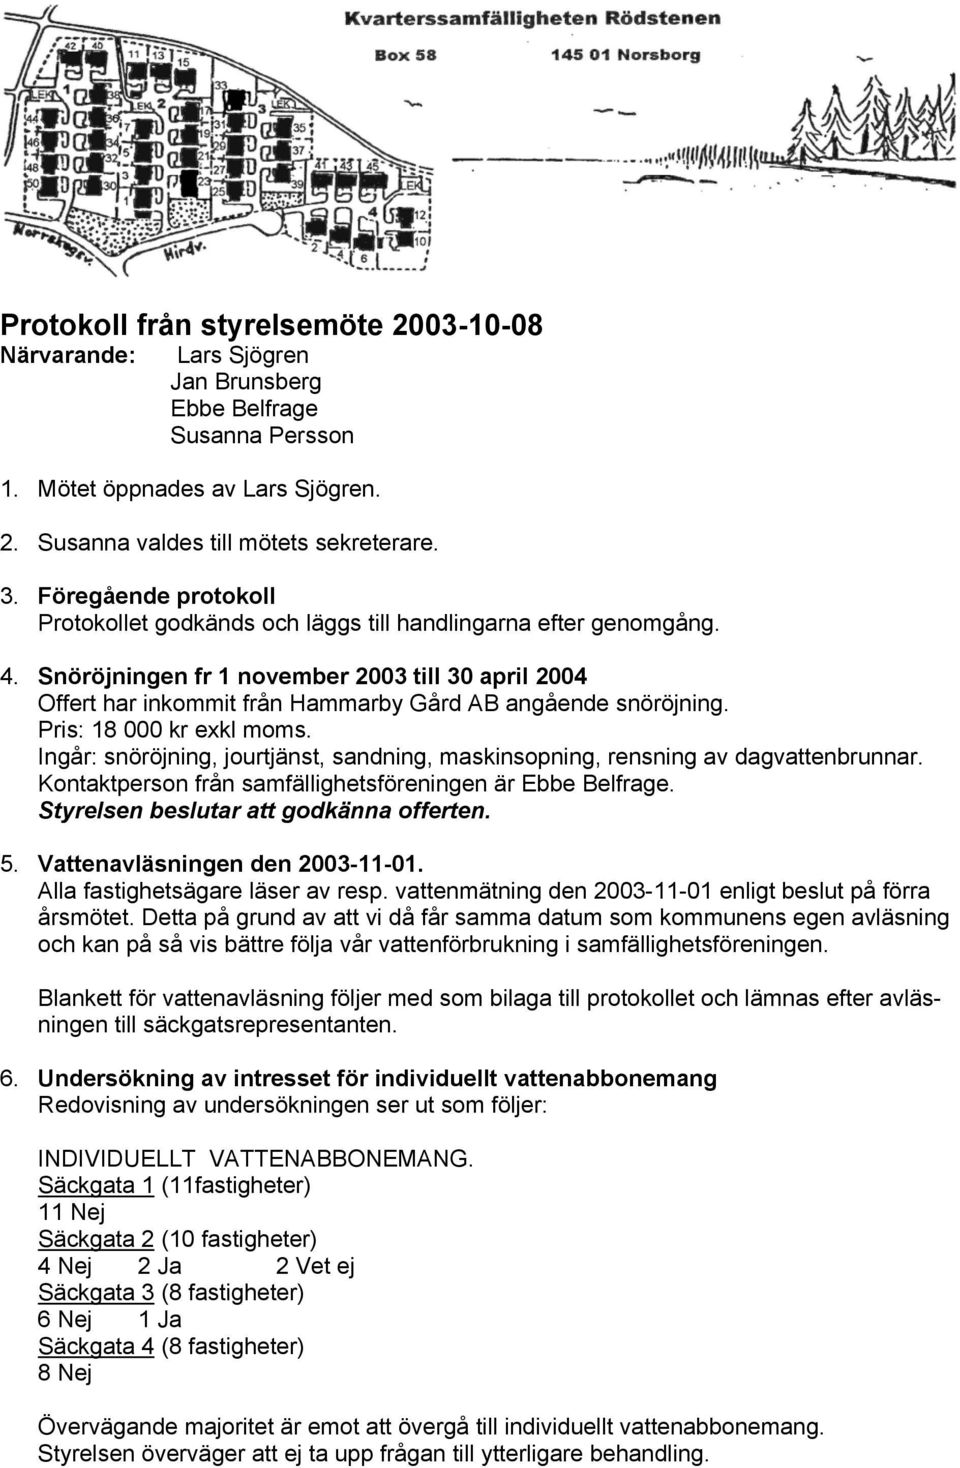 Snöröjningen fr 1 november 2003 till 30 april 2004 Offert har inkommit från Hammarby Gård AB angående snöröjning. Pris: 18 000 kr exkl moms.